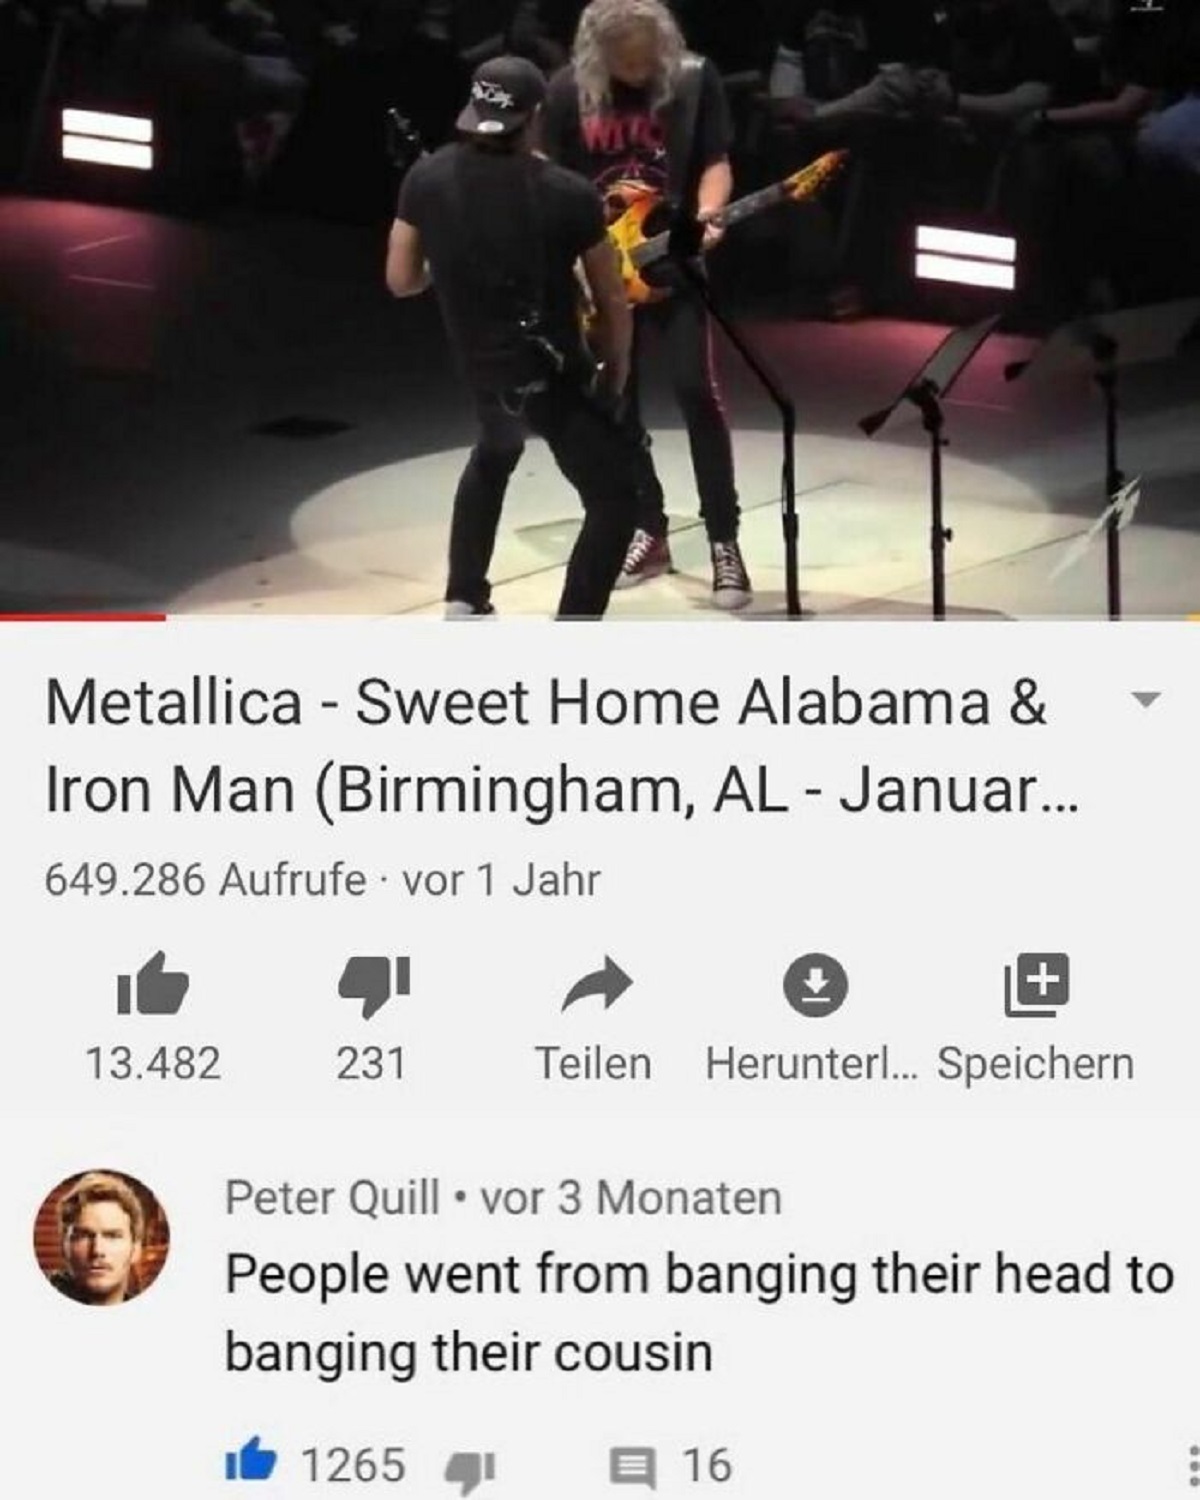 rock concert - Metallica Sweet Home Alabama & Iron Man Birmingham, Al Januar... 649.286 Aufrufe vor 1 Jahr 13.482 231 Teilen Herunter... Speichern Peter Quill vor 3 Monaten People went from banging their head to banging their cousin 1265 16